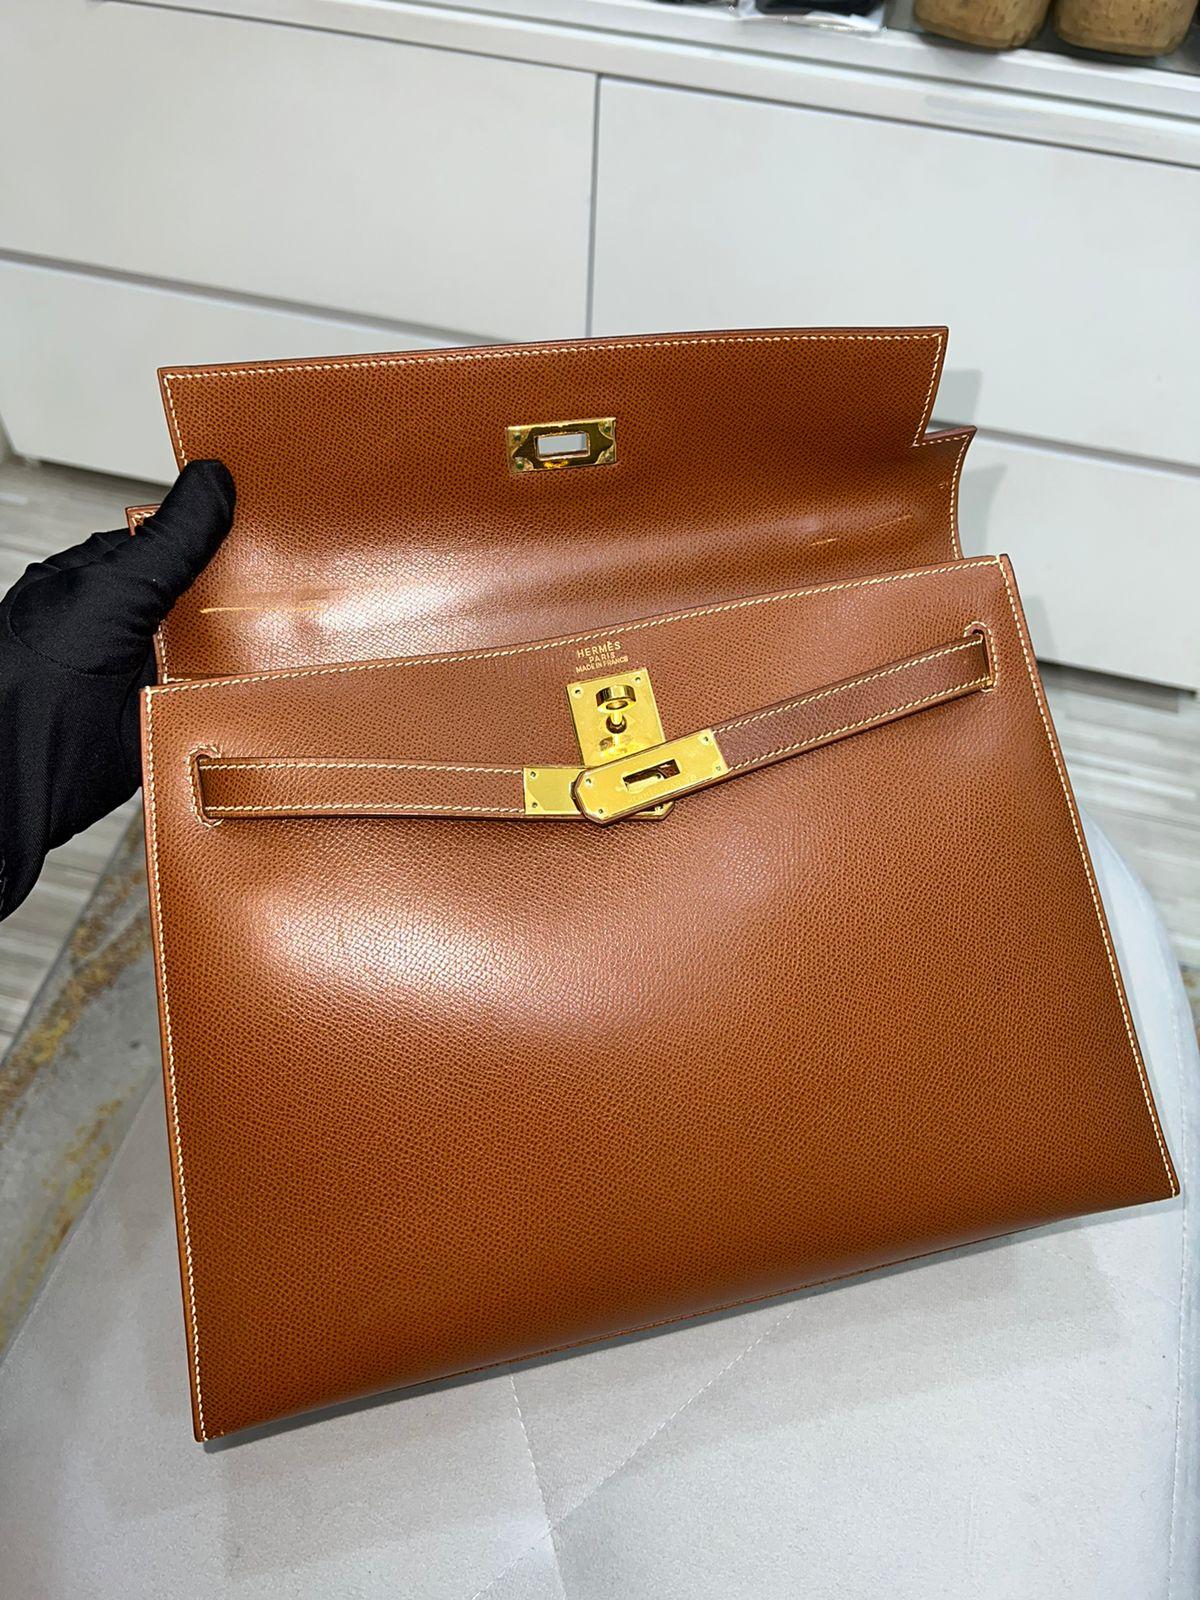 Women's or Men's Rare Vintage Hermes Kelly 32 Lisse Noisette GHW Bag For Sale